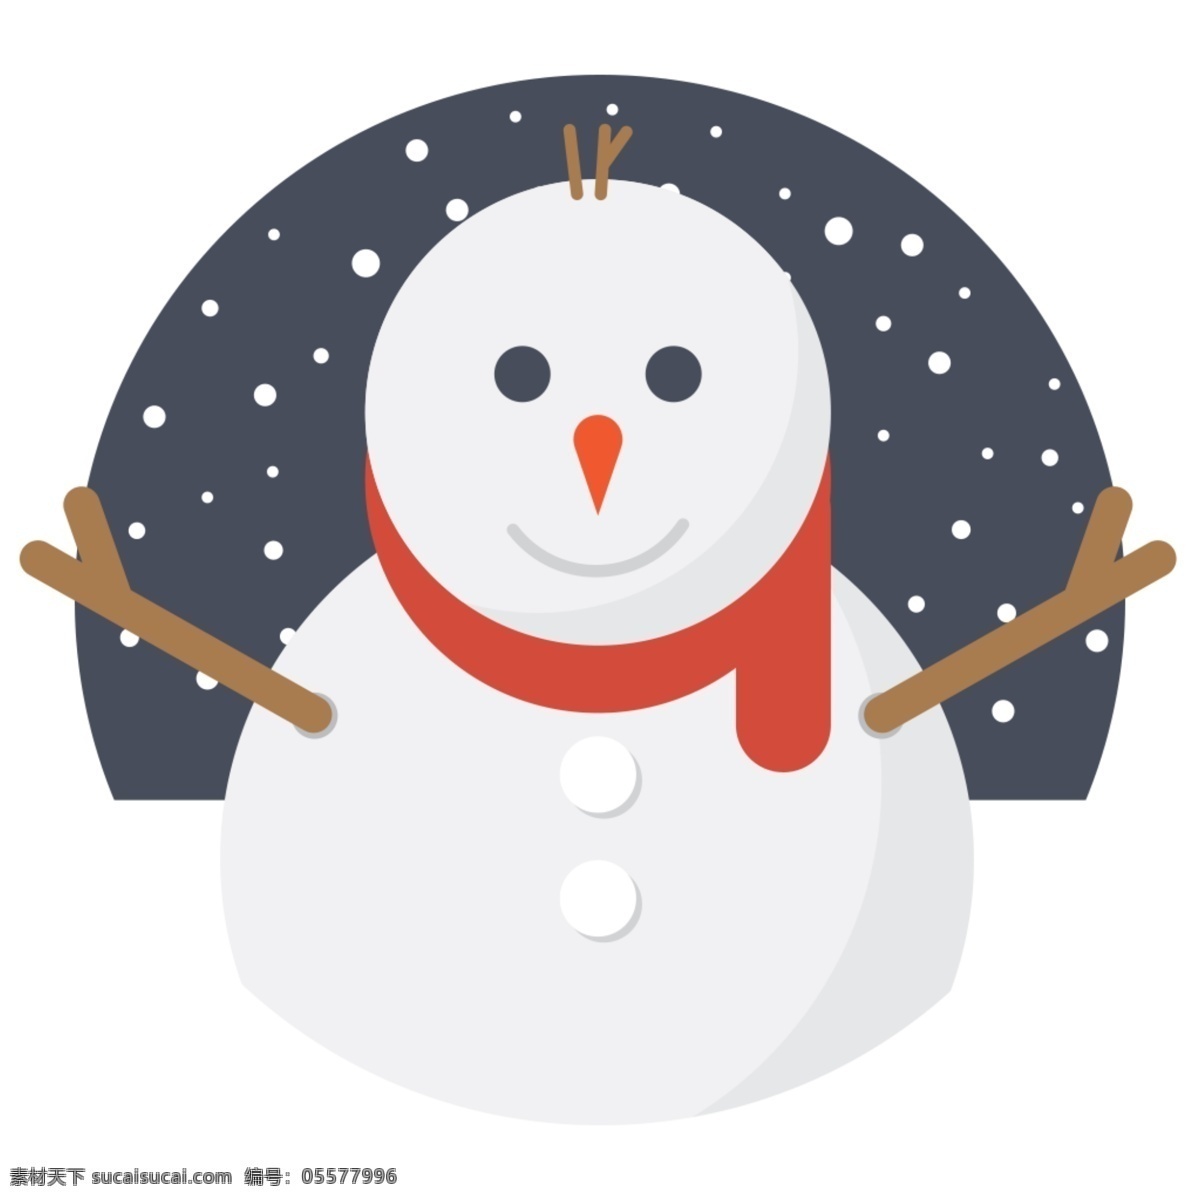 网页 ui 圣诞节 圣诞 元素 雪人 icon 图标 图标设计 icon设计 icon图标 网页图标 圣诞节图标 圣诞节素材 雪人图标 雪人icon